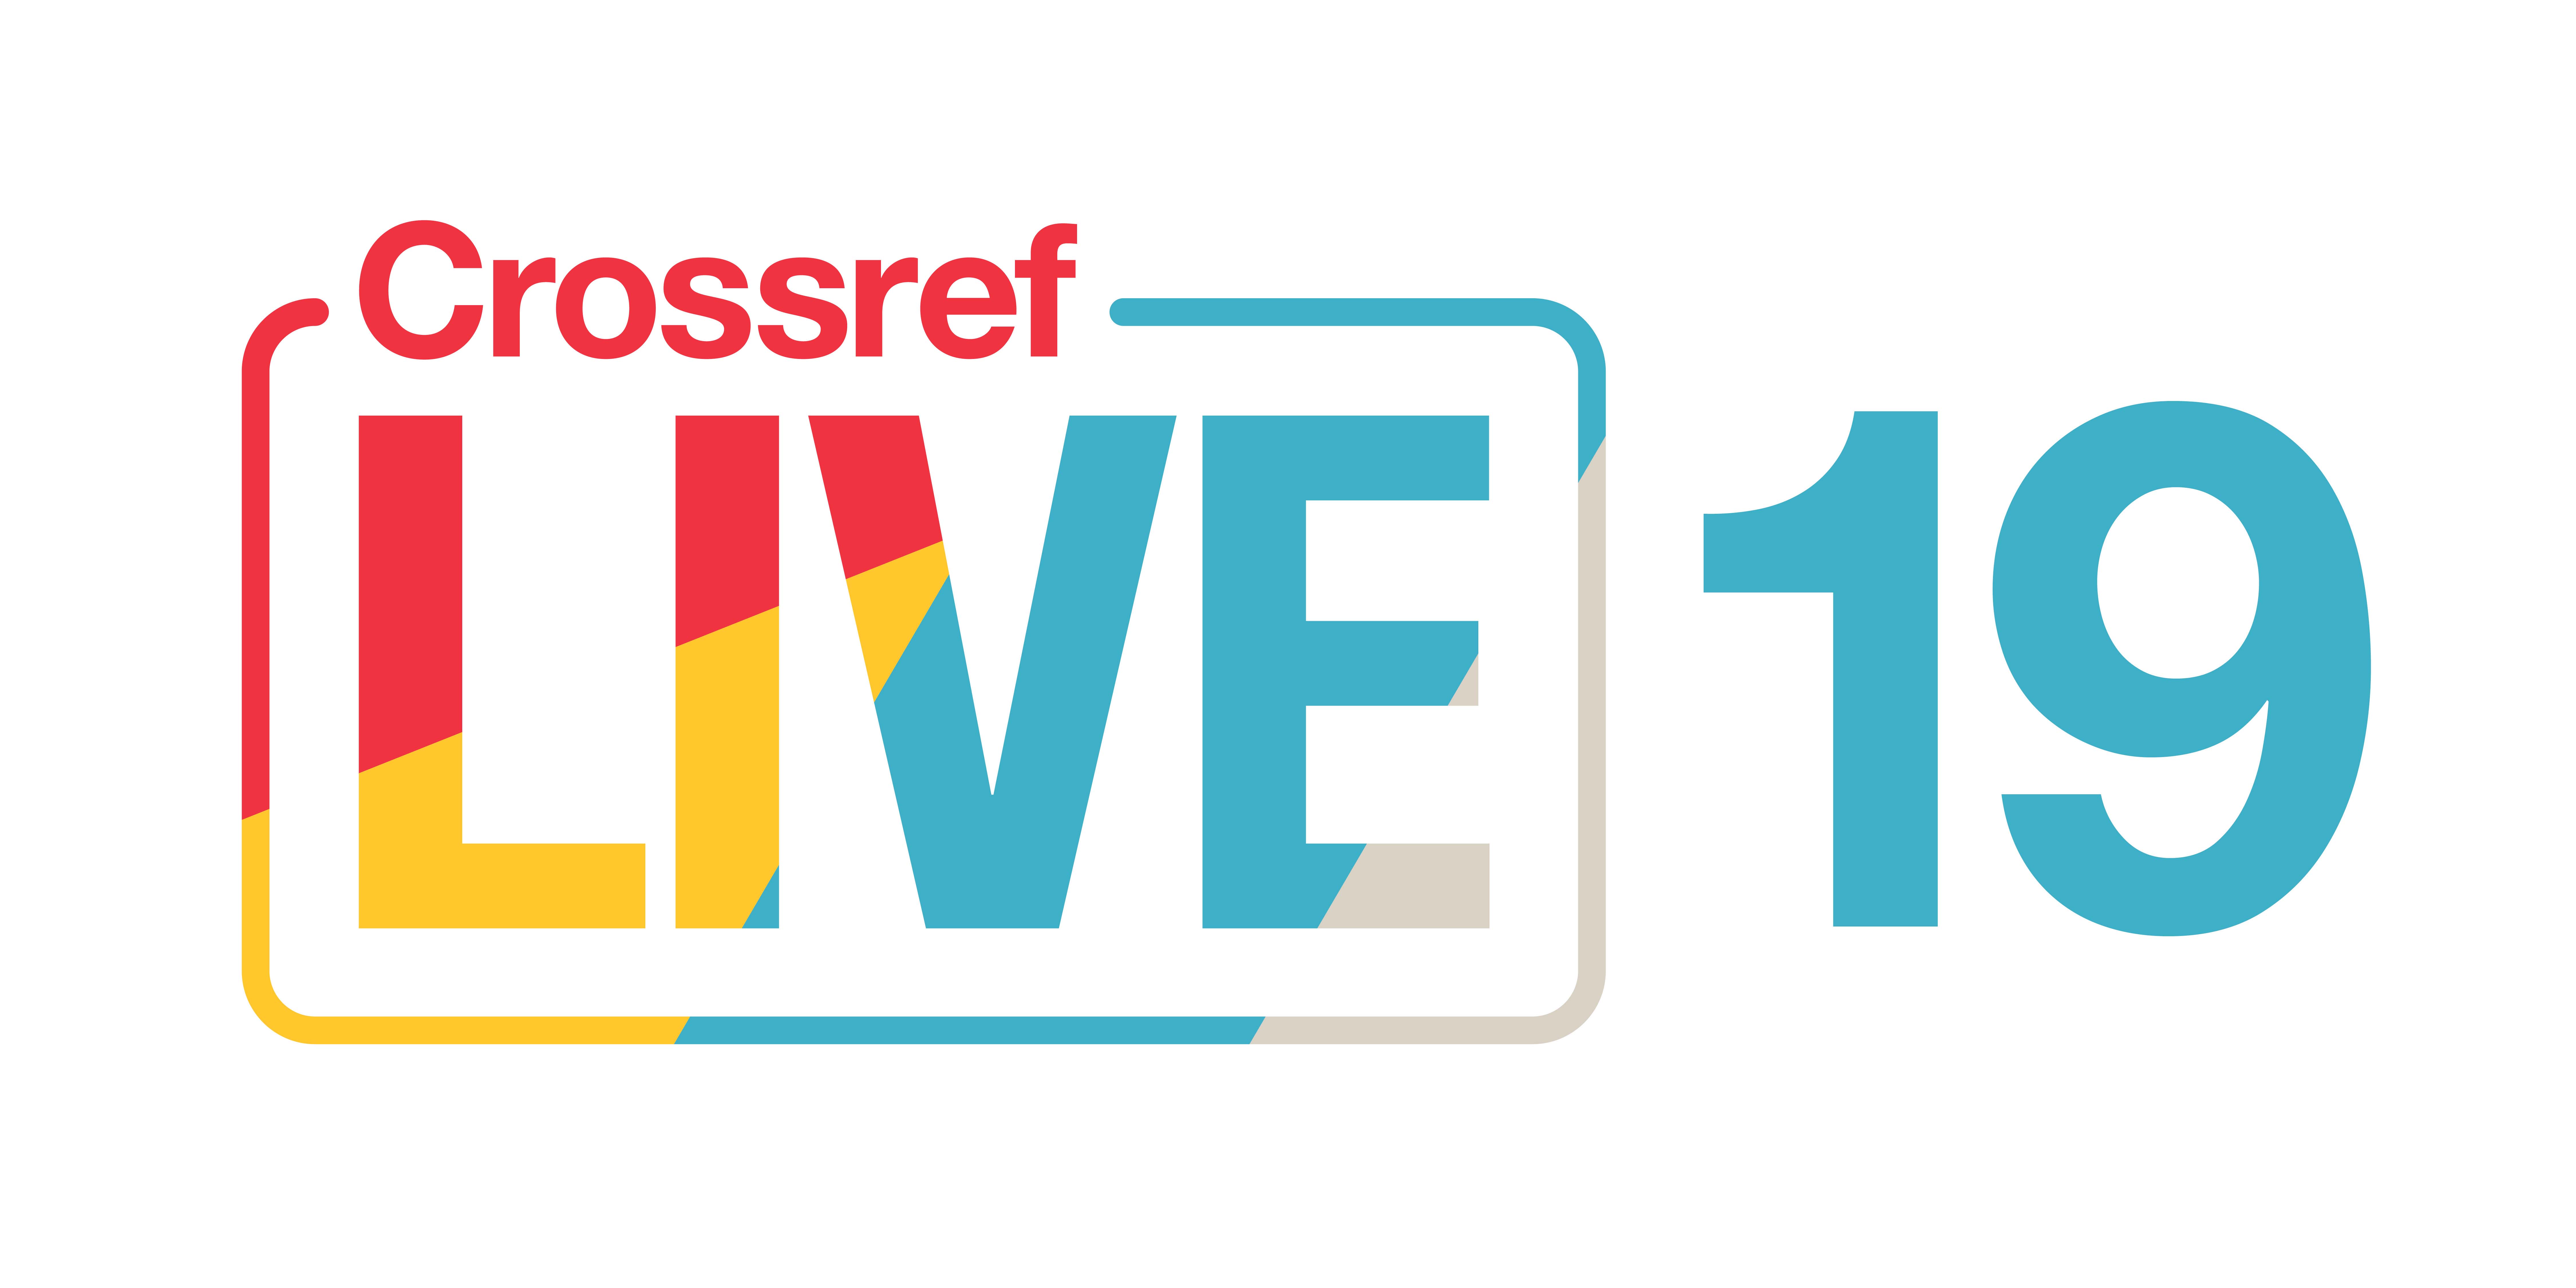 Crossref LIVE19 logo